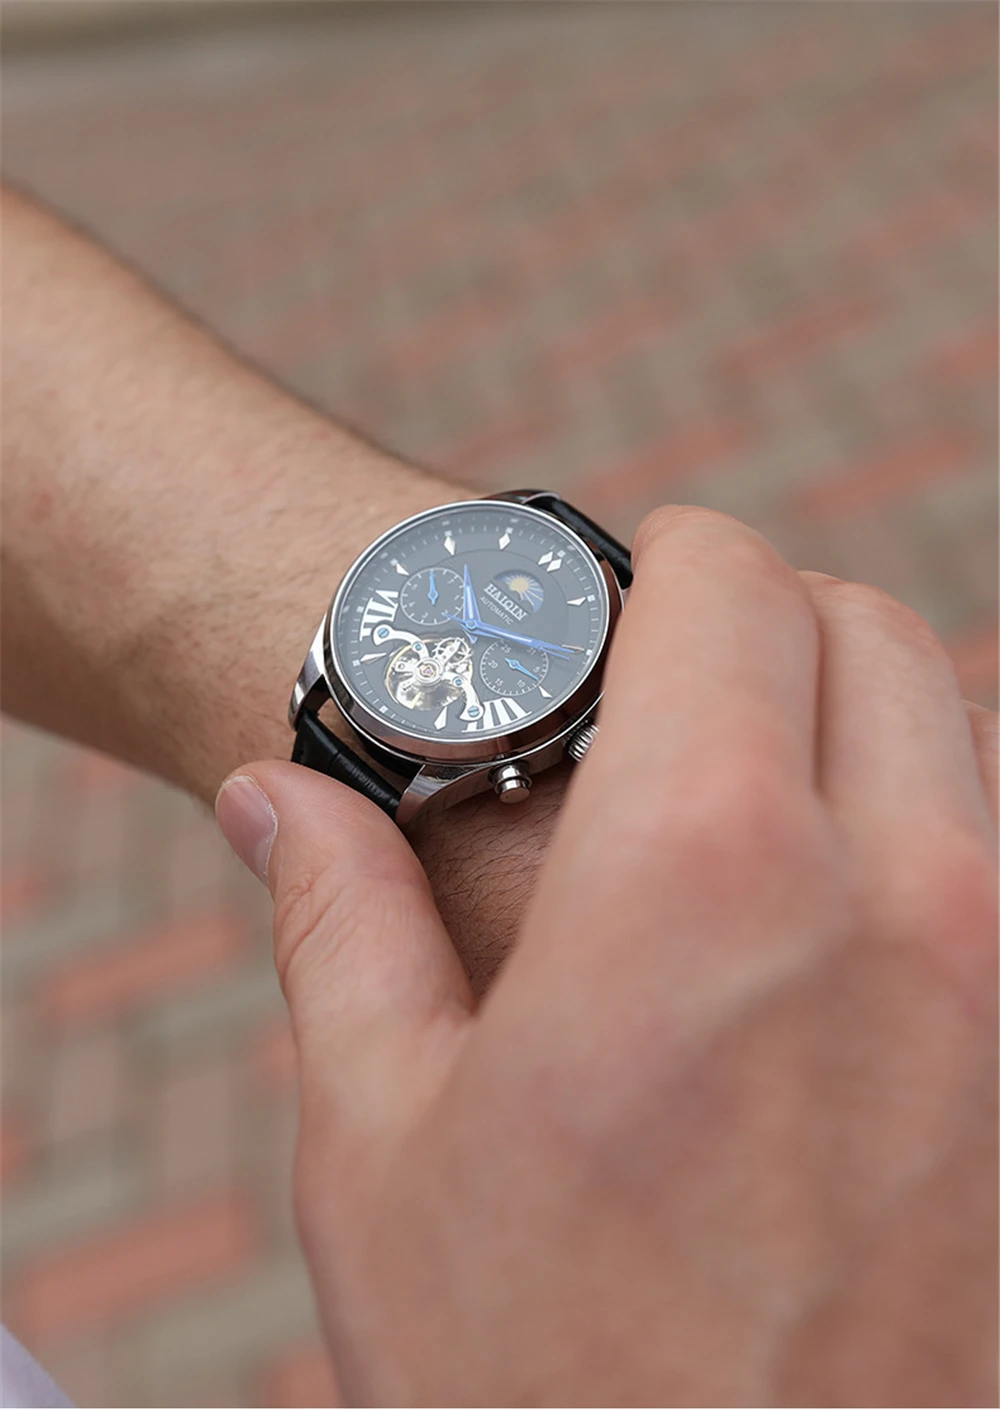 HAIQIN автоматические механические часы для мужчин водонепроницаемые деловые наручные часы из нержавеющей стали мужские часы с календарем новые спортивные часы для мужчин